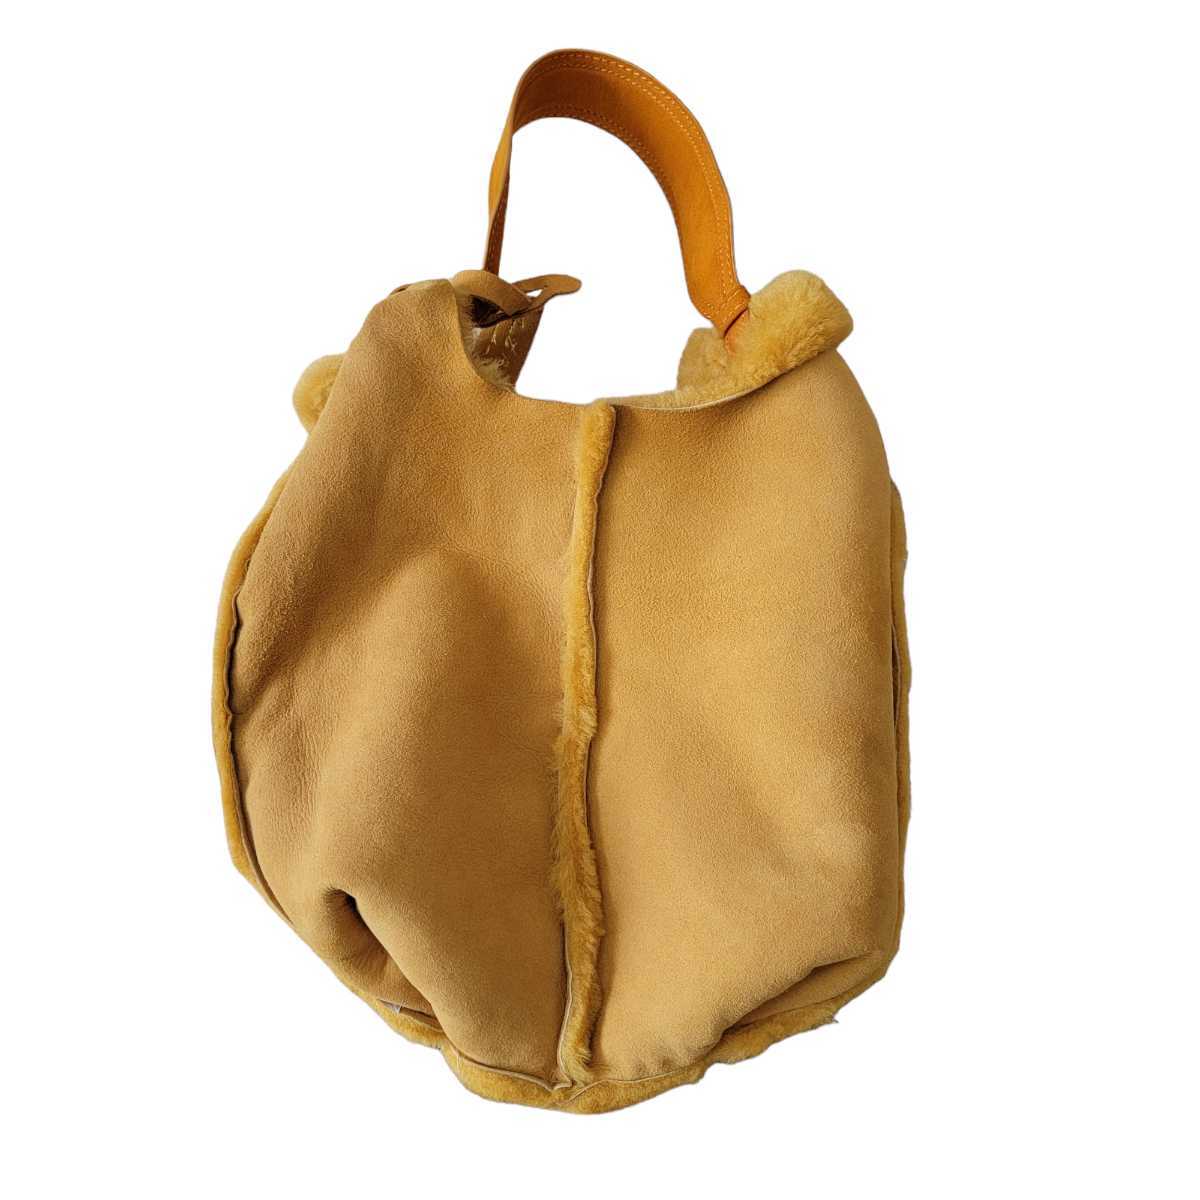 【新品同様】イタリア製 アニタビラルディ ANITA BILARDI ムートン トートバッグ ハンドバッグ 保存袋付